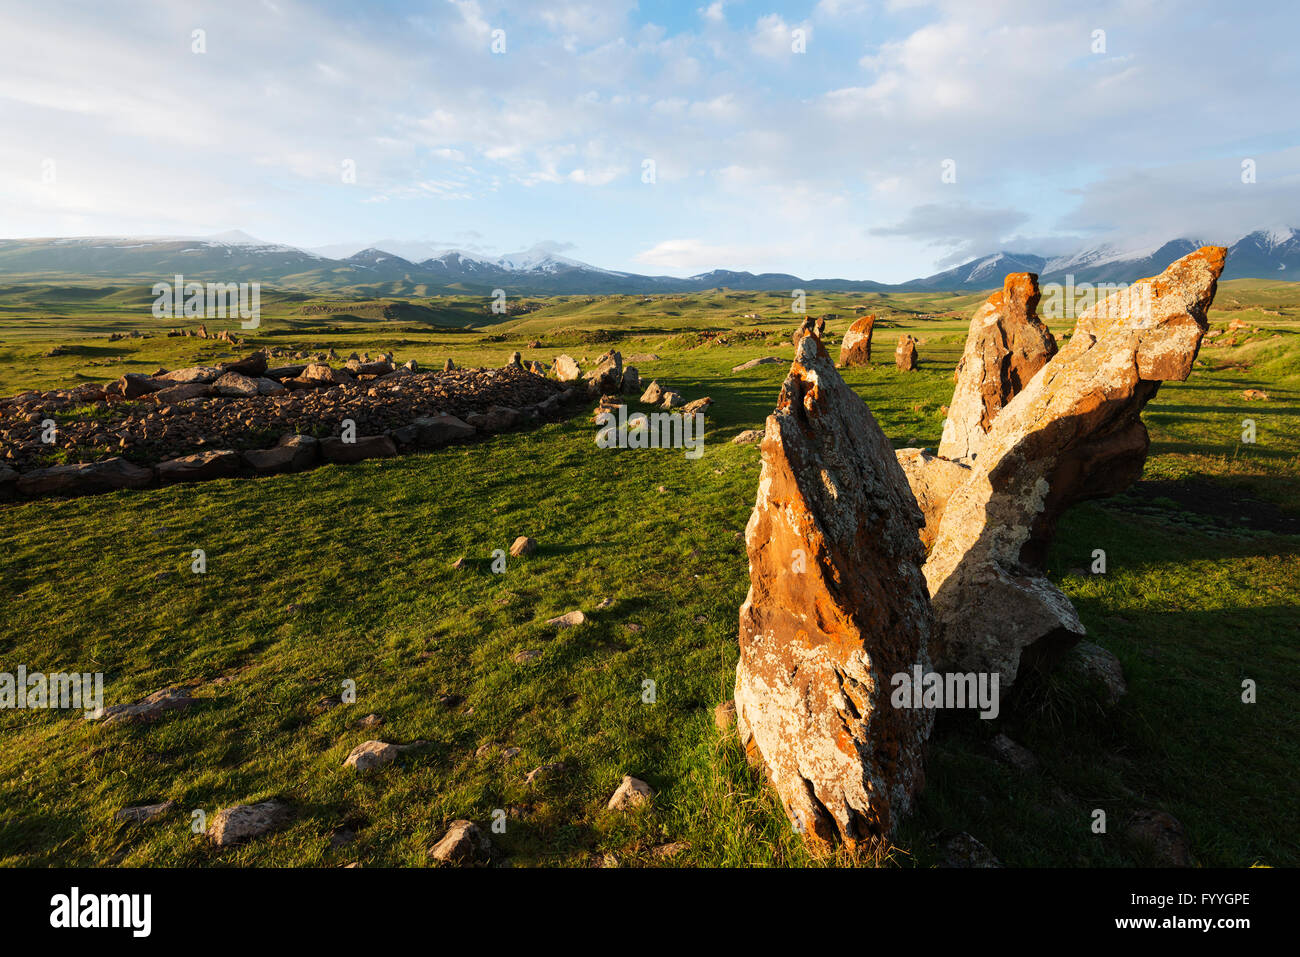 Eurasia, región del Cáucaso, Armenia, Syunik provincia Karahunj Zorats Karer, arqueológicos prehistóricos 'stonehenge' Foto de stock